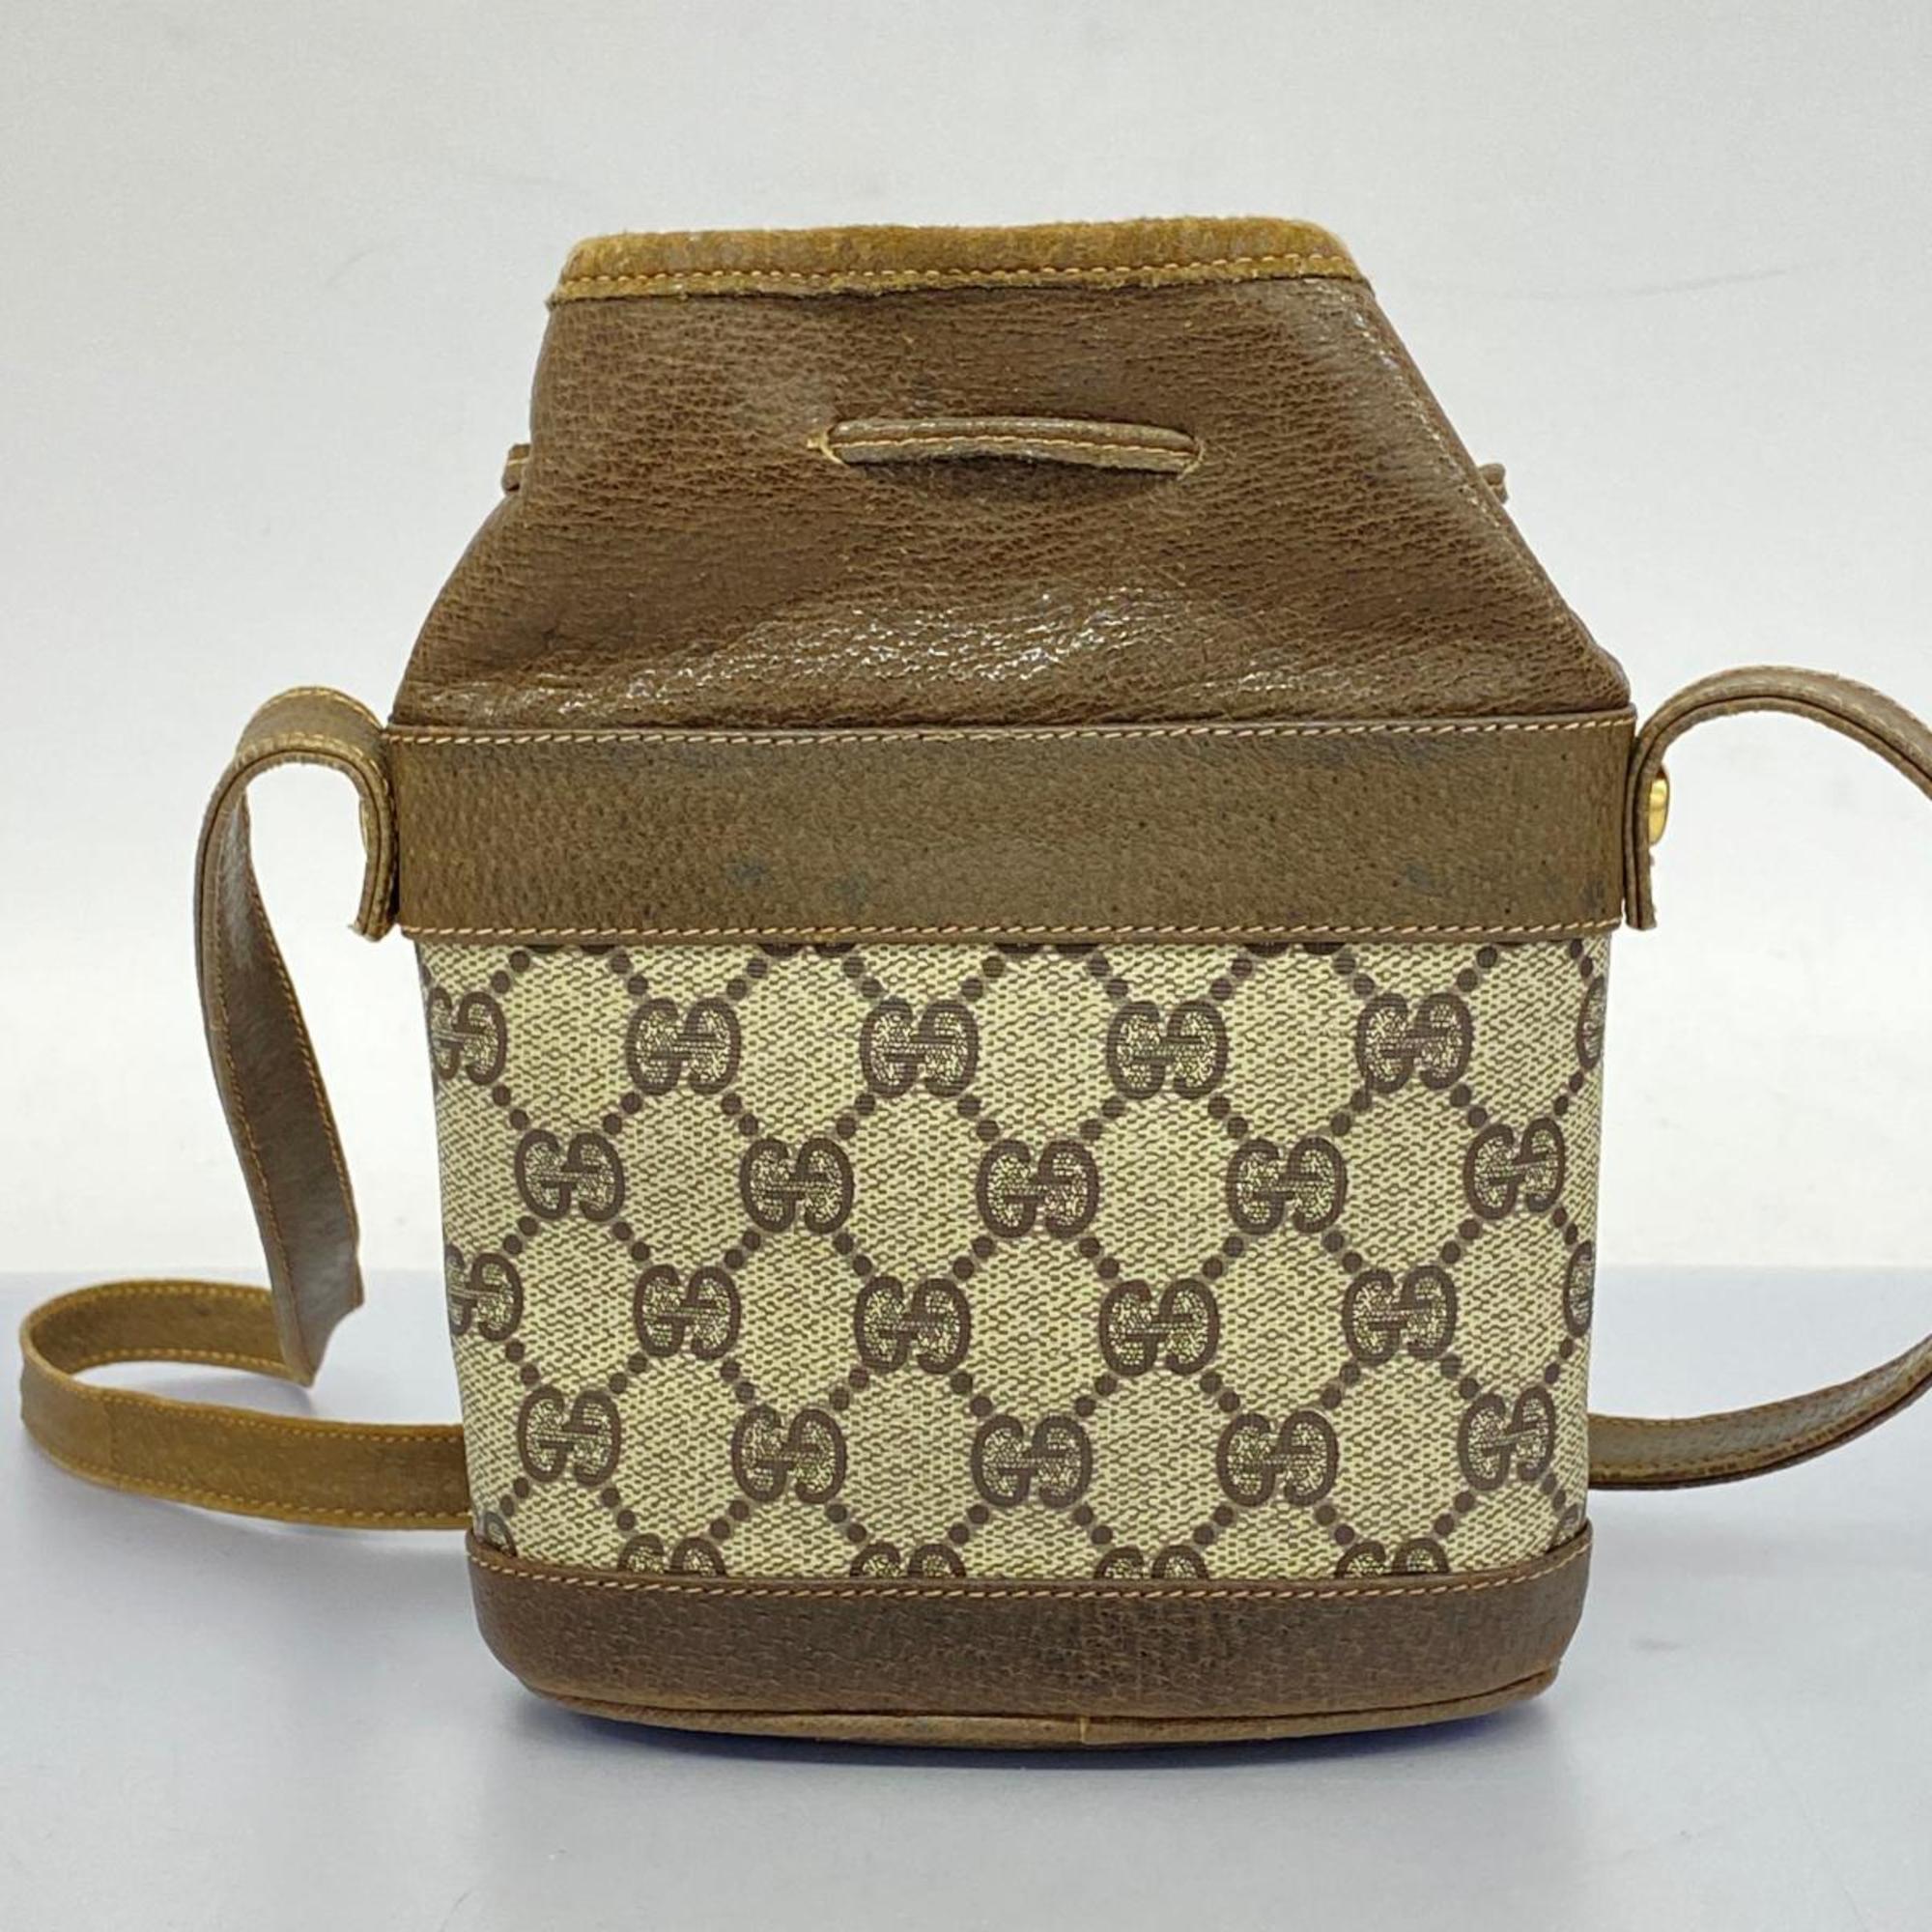 Gucci Shoulder Bag GG Supreme Old 001 23 496 Brown Women's